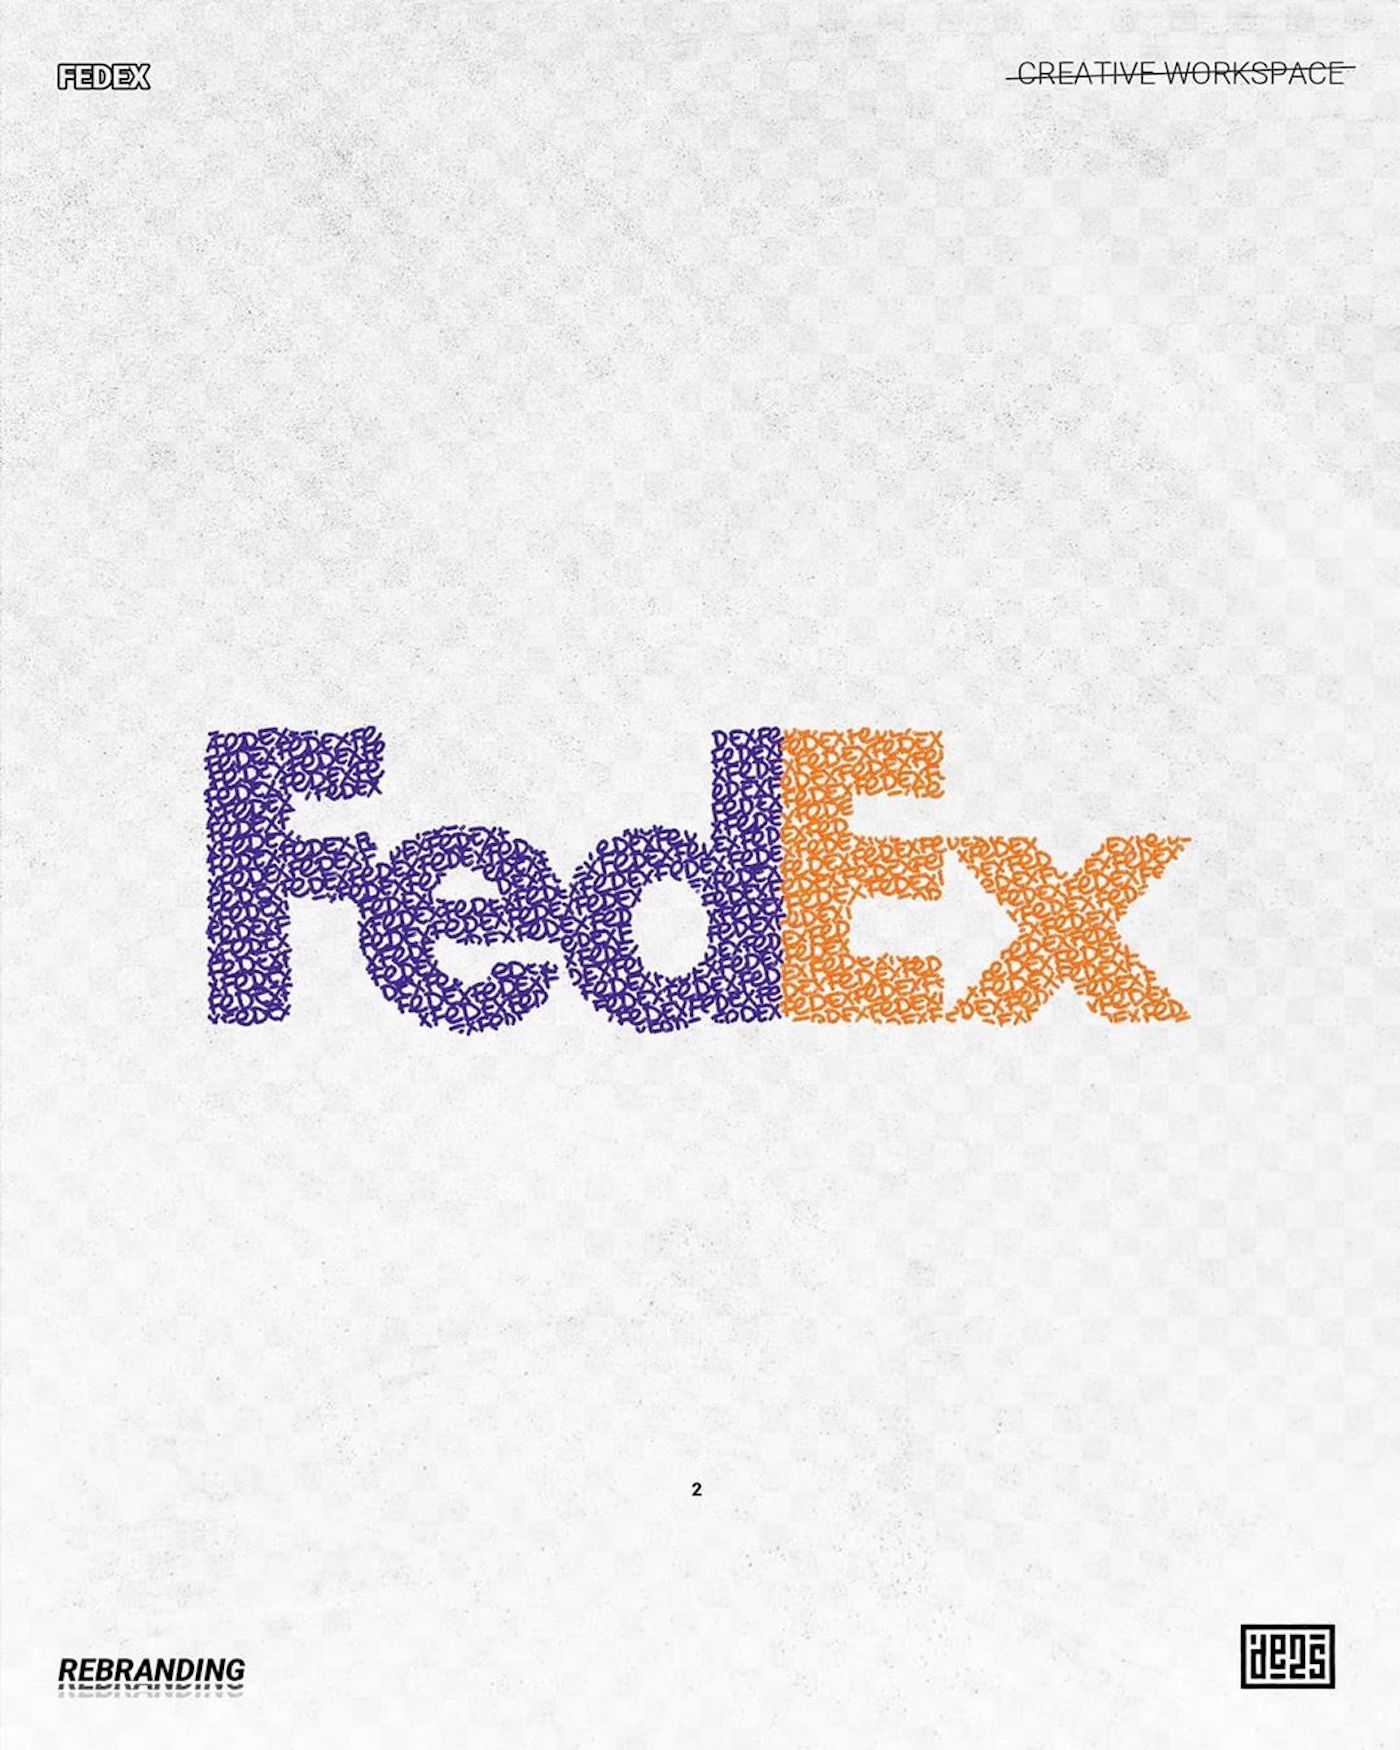 Logo de FedEx rebrandé par de2s